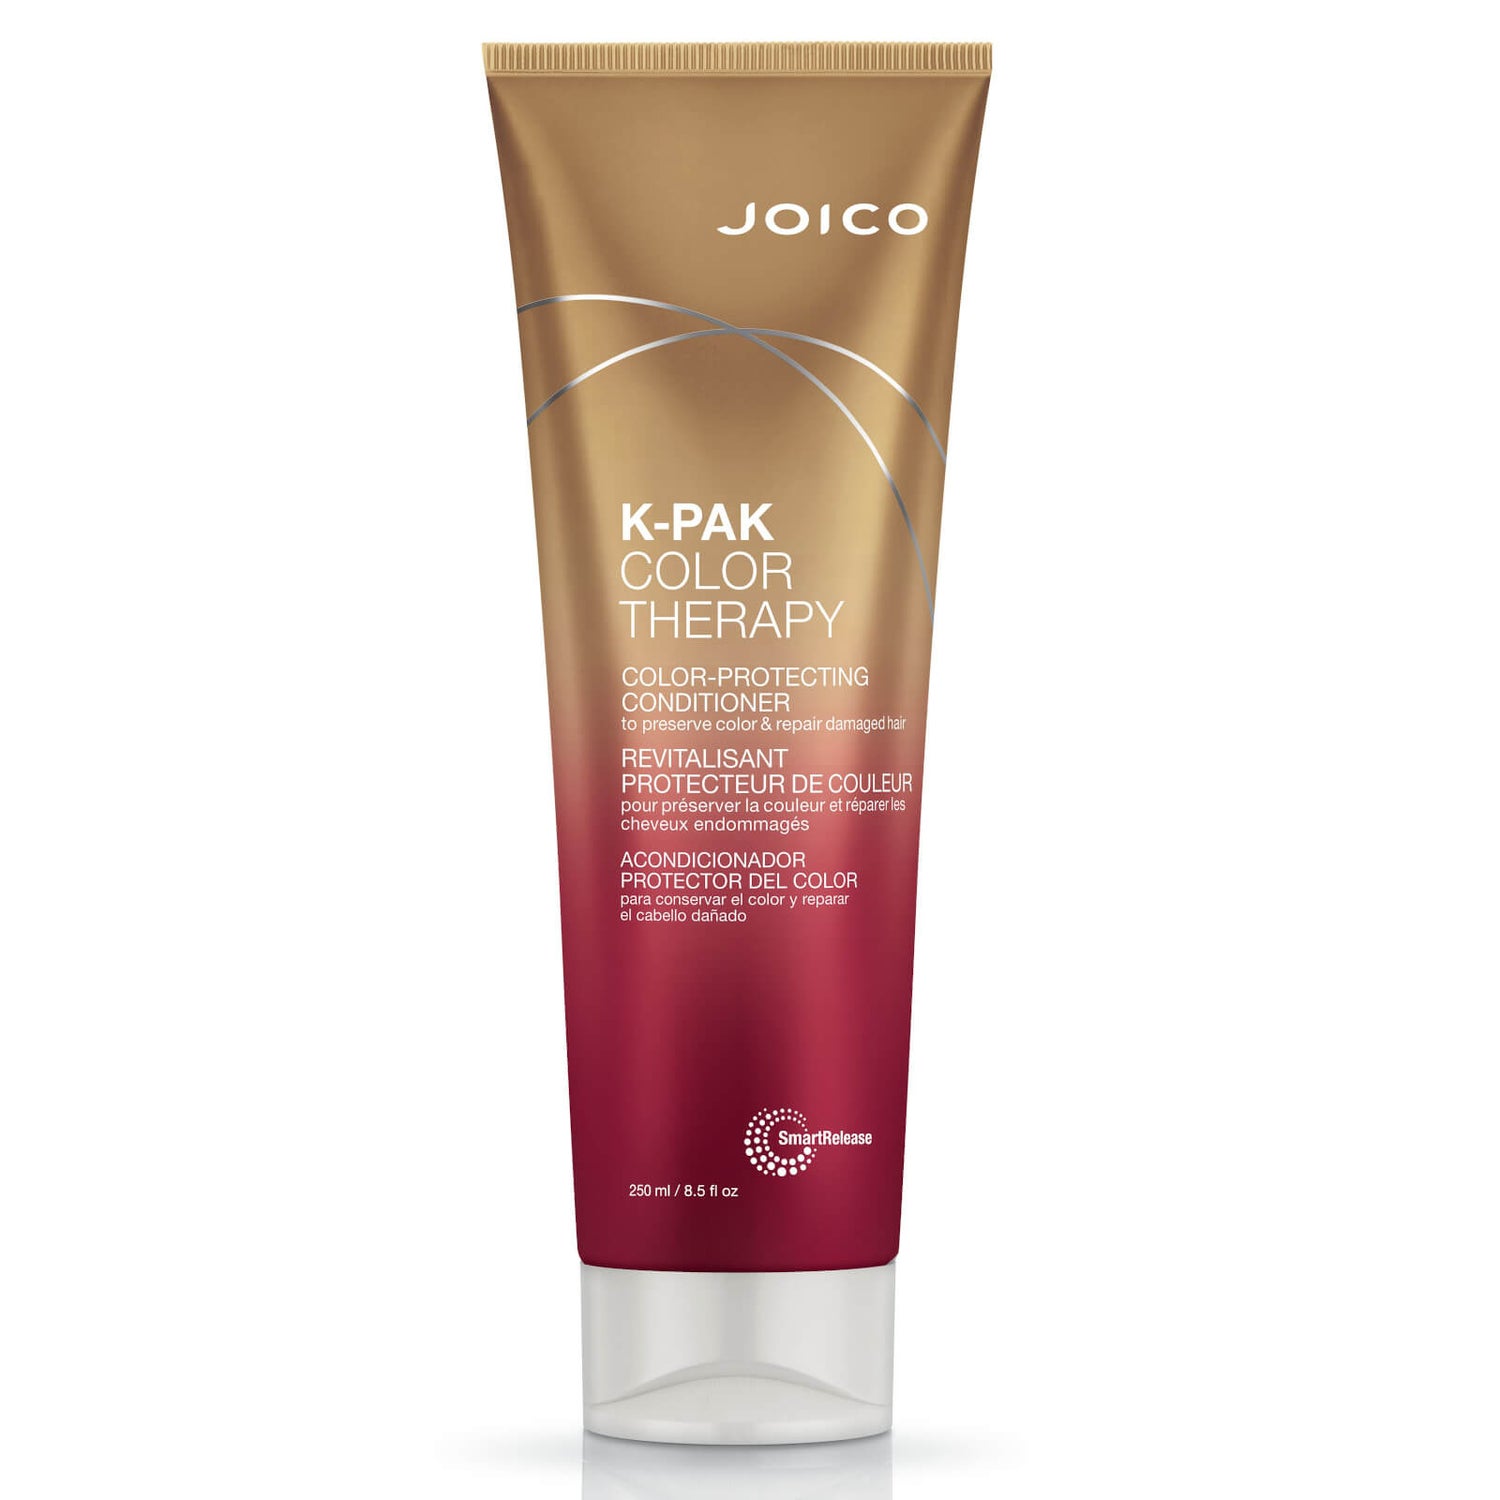 Joico K-Pak Color Therapy après-shampooing pour préserver la couleur 300ml